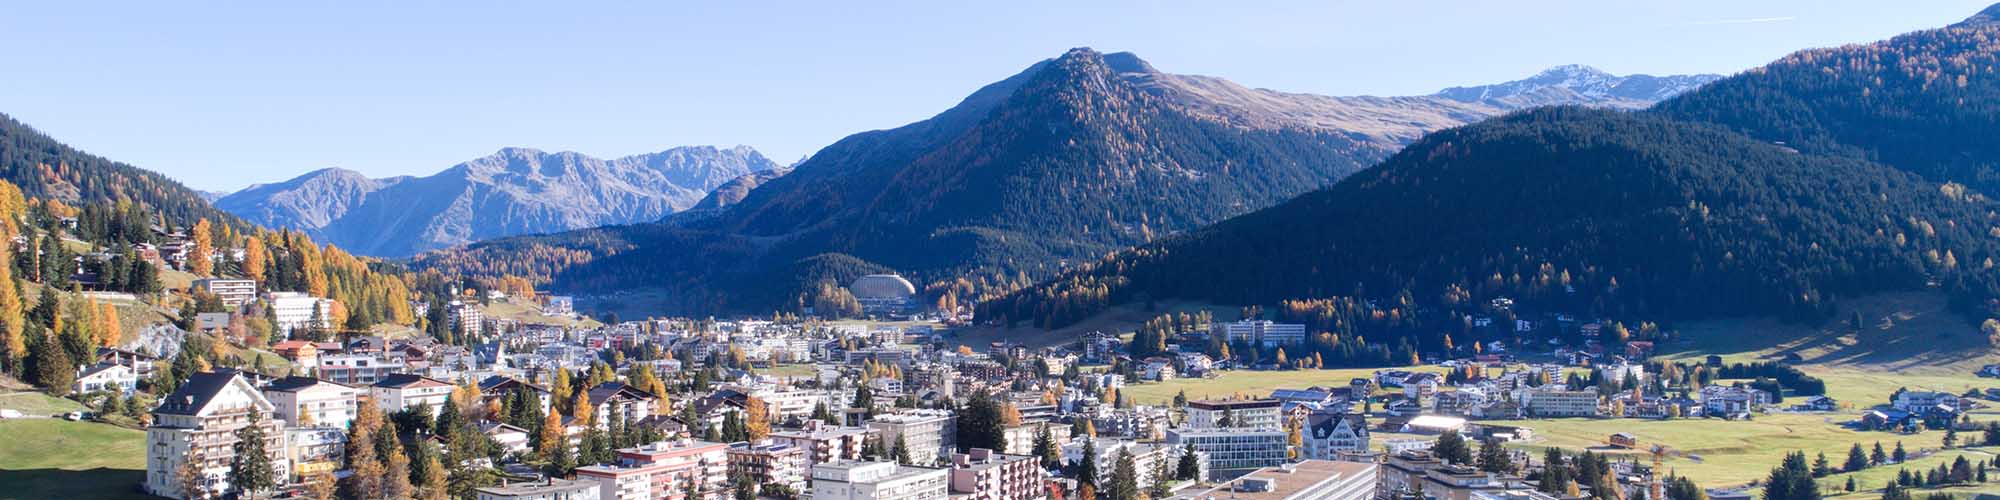 Hotel Davos - Davos - im Sommer geniessen